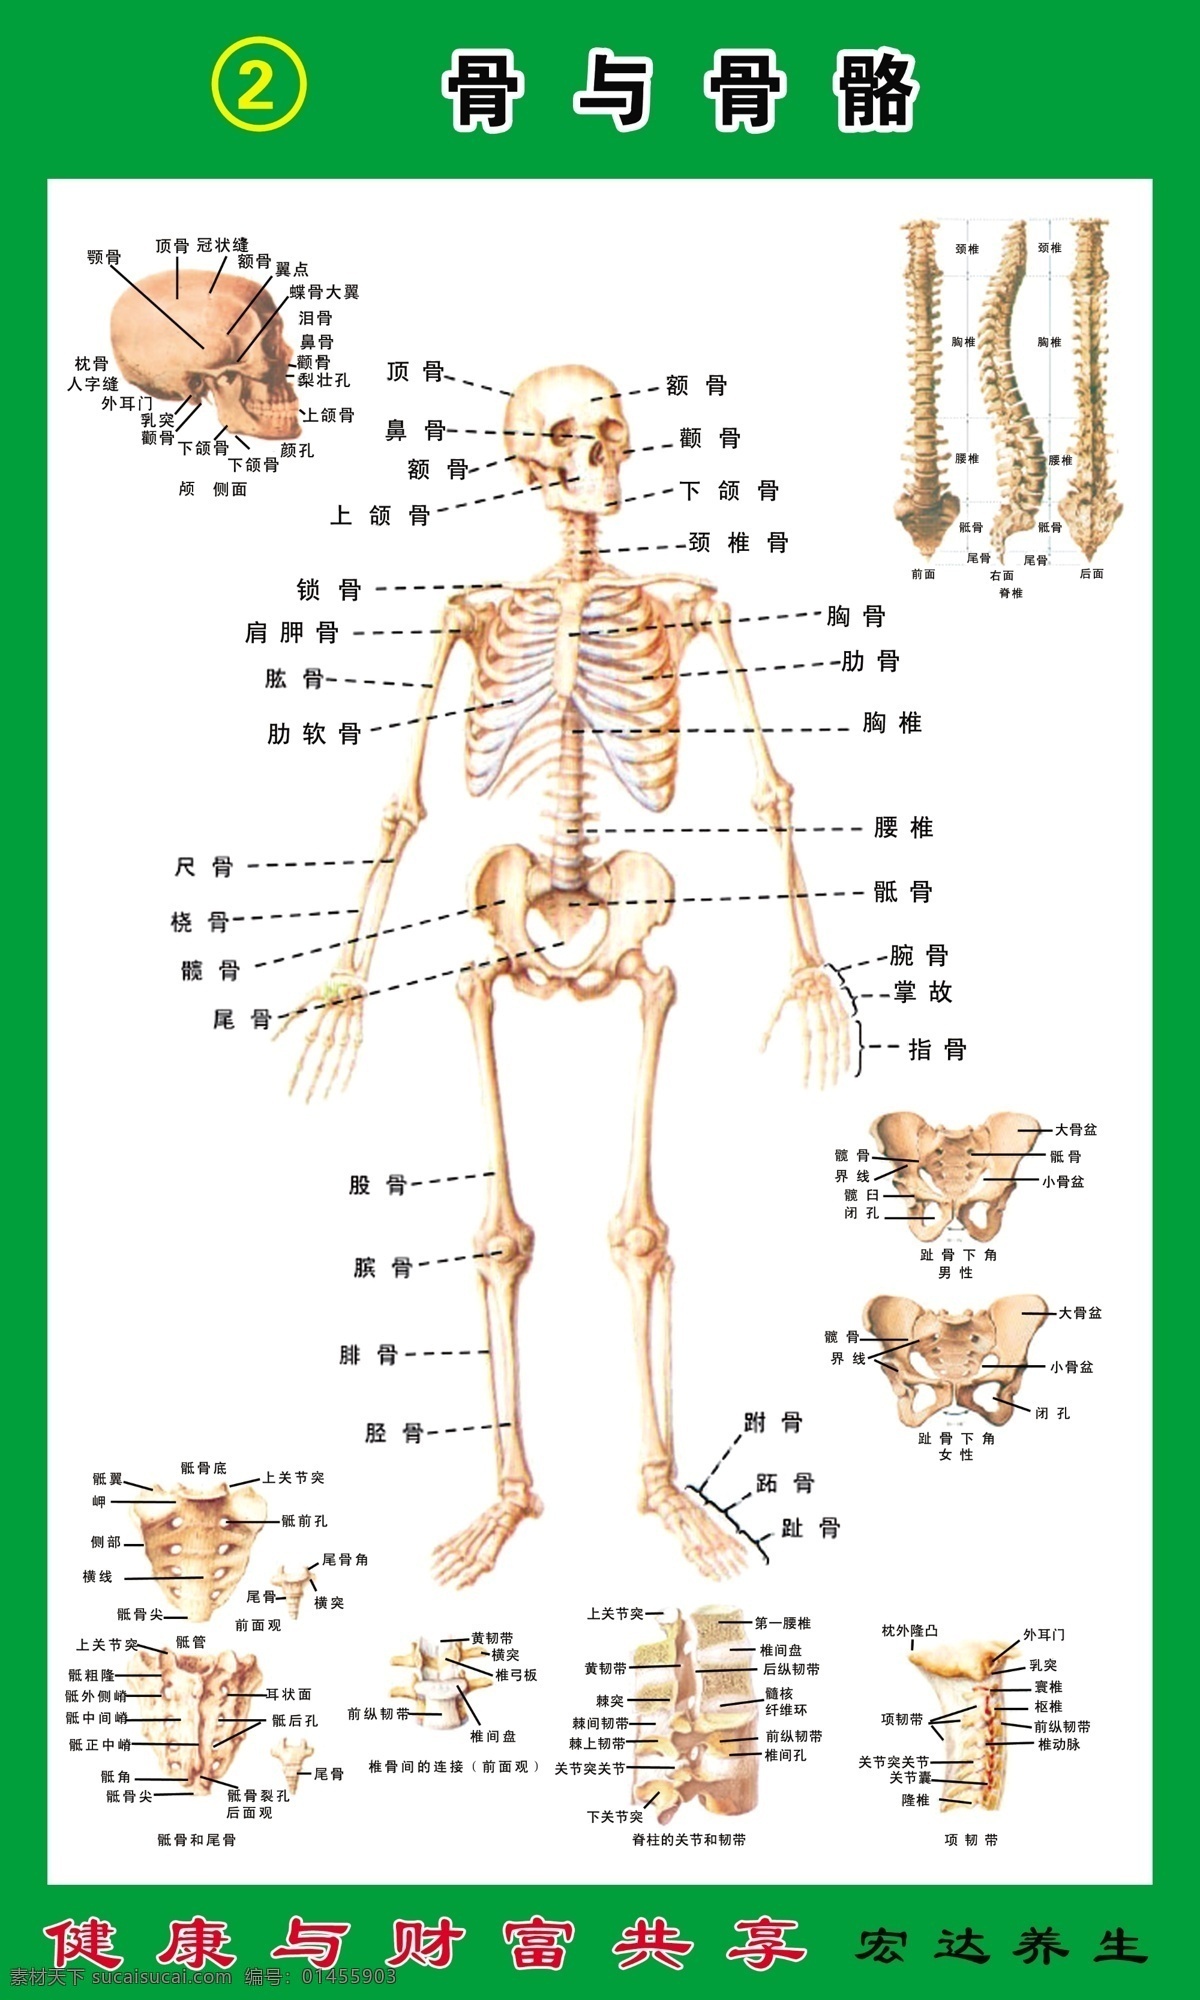 骨骼与骨头 养生 健康与财富 骶骨和尾骨 脊柱 关节 韧带 项韧带 广告设计模板 源文件